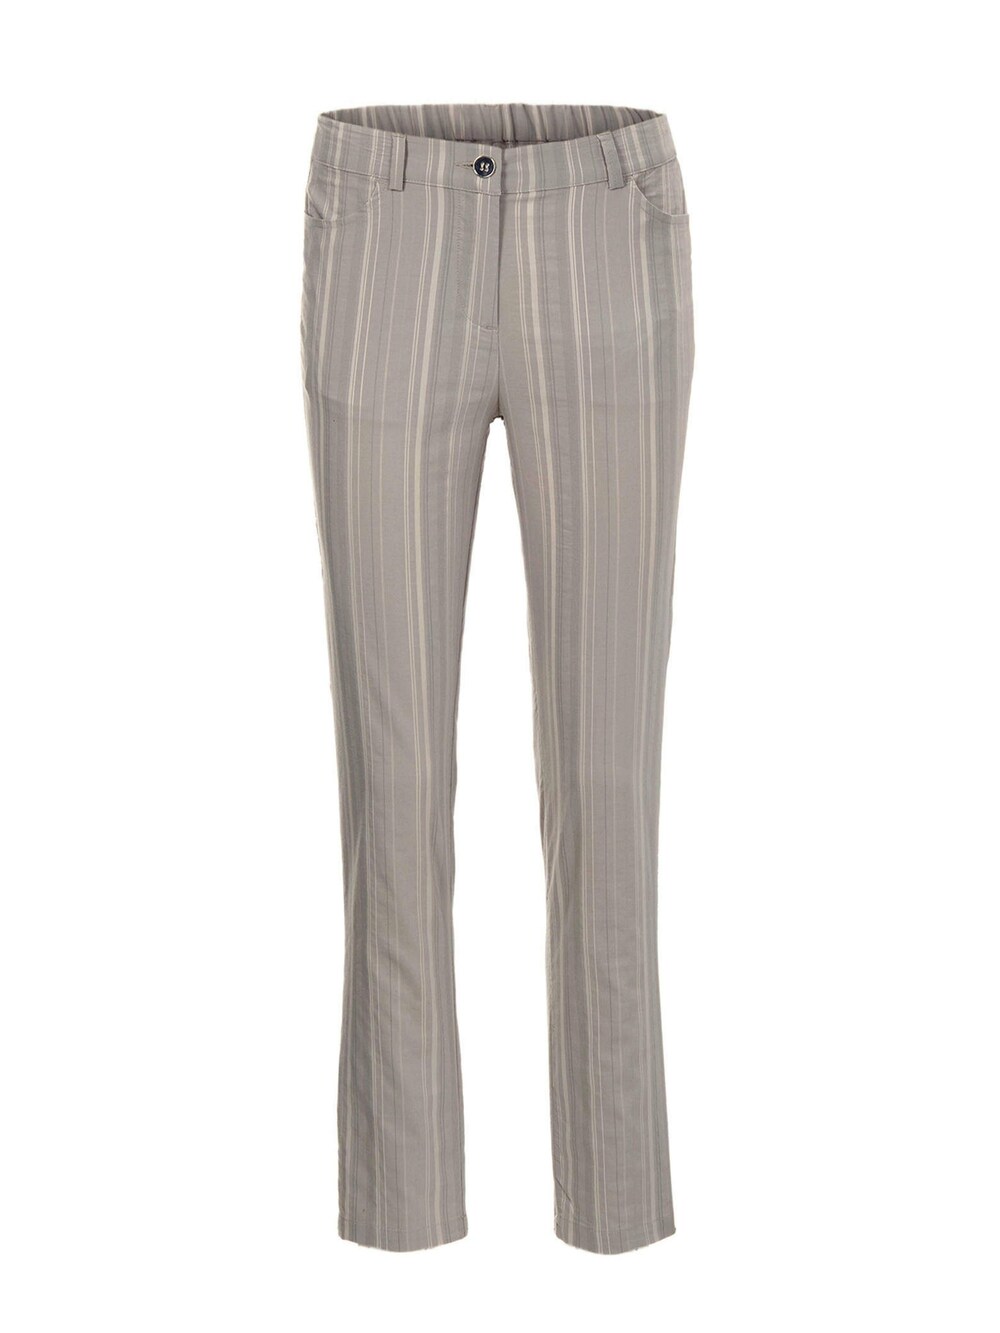 Обычные брюки Goldner, песочный/темно-бежевый обычные брюки liliput бежевый песочный